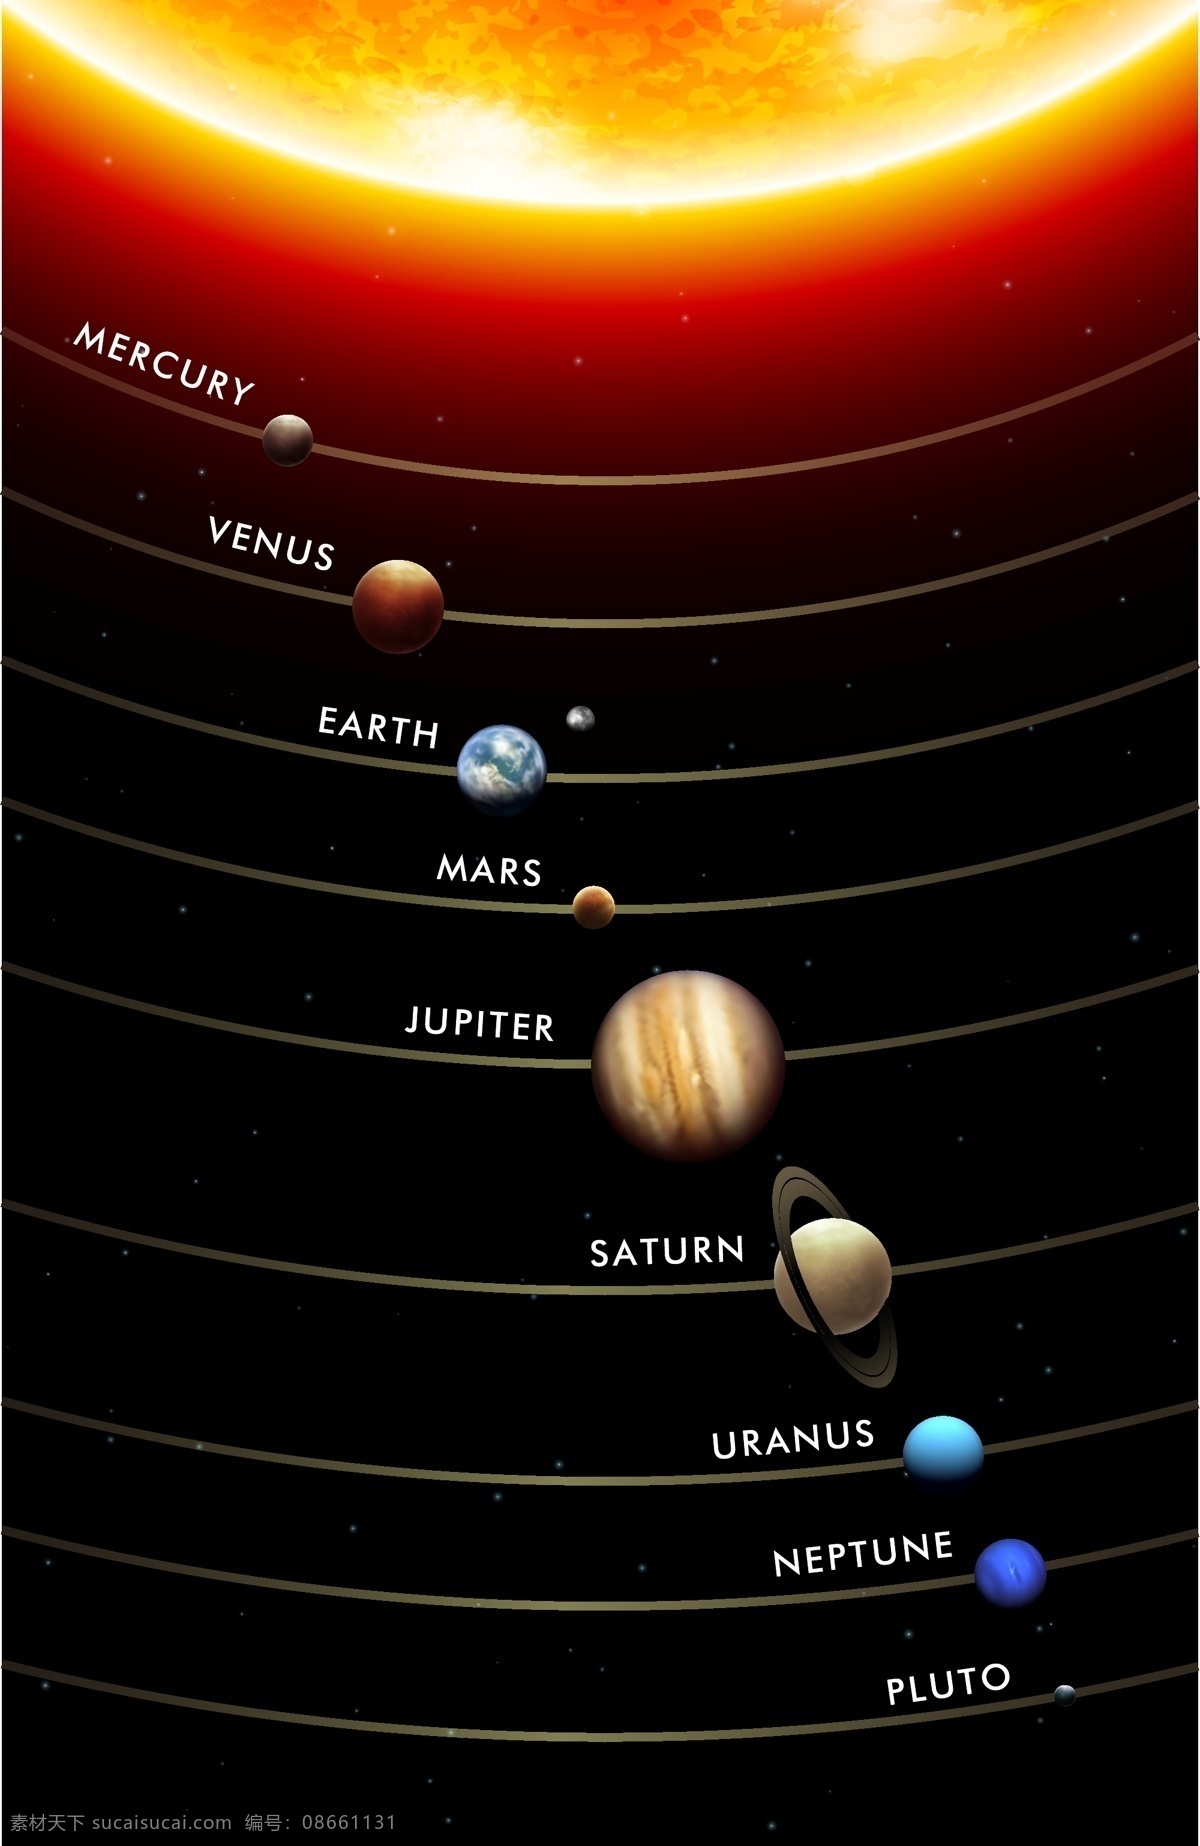 太阳系 行星 轨道 运行图 矢量 地理 地球 火星 金星 科学 矢量素材 矢量图 水星 天体 星球 土星 木星 星体 物理 天王星 海王星